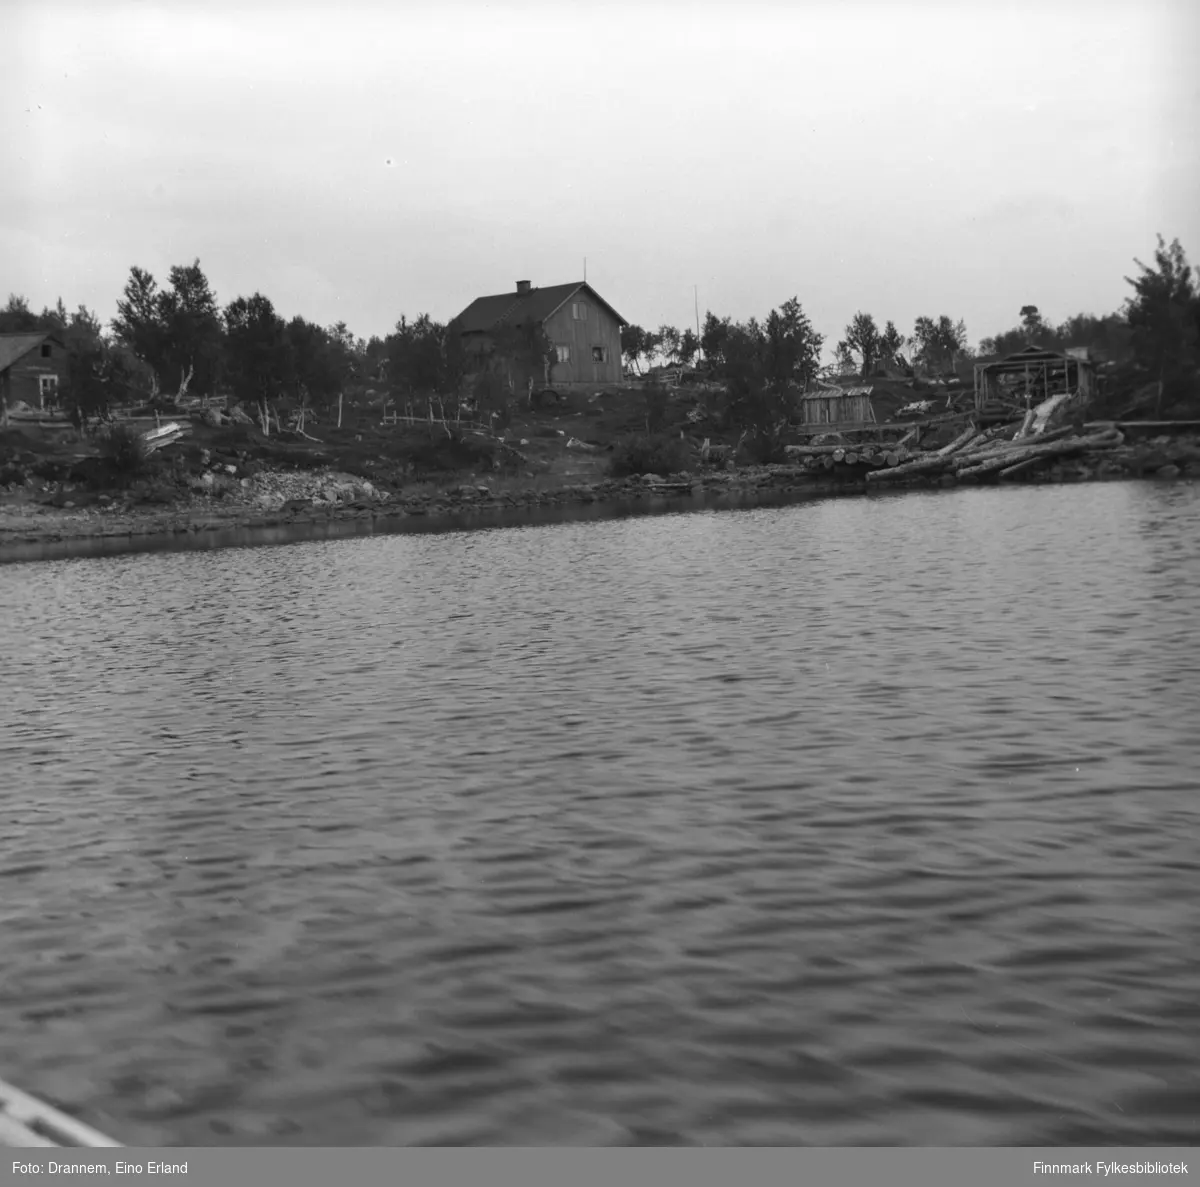 Bilde tatt fra innsjøen mot et hus og noen hytter langs bredden.